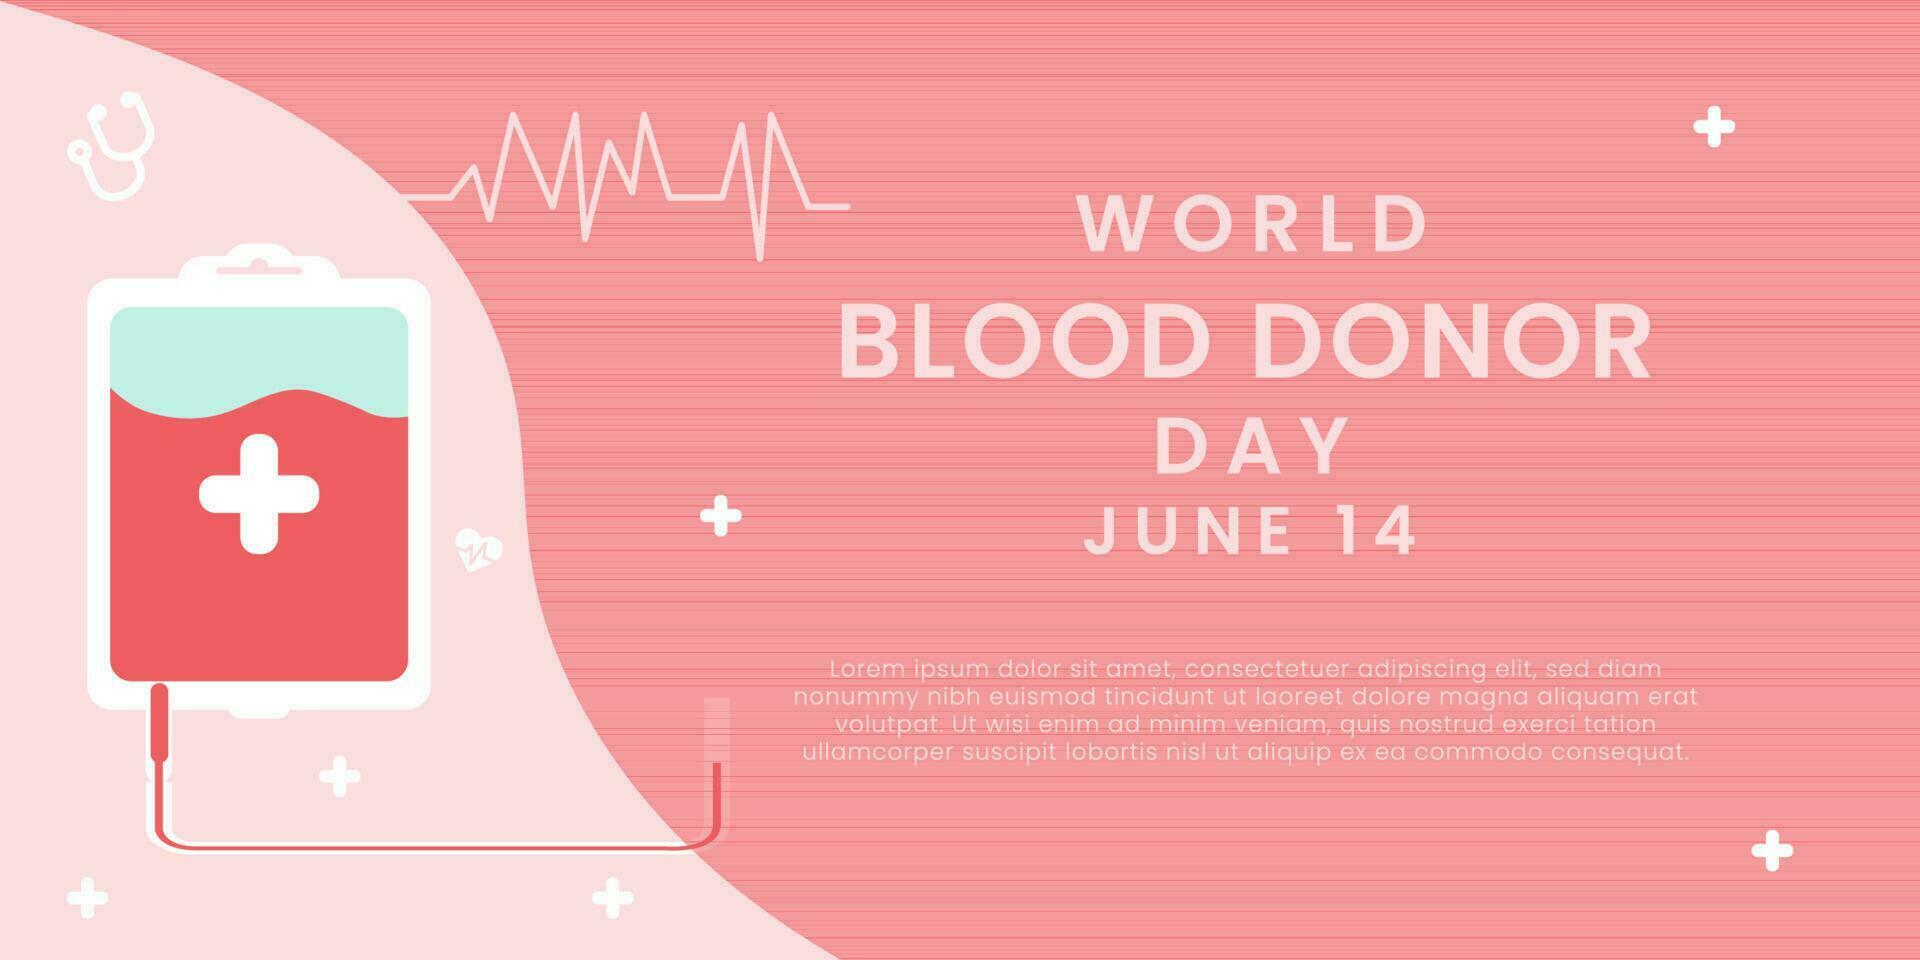 Welt Blut Spender Tag auf Juni 14. Blut Spende Konzept. geben Blut speichern Leben. Welt Blut Spender Tag Bewusstsein. Hintergrund, Poster, Banner, Flyer. Vektor Illustration.